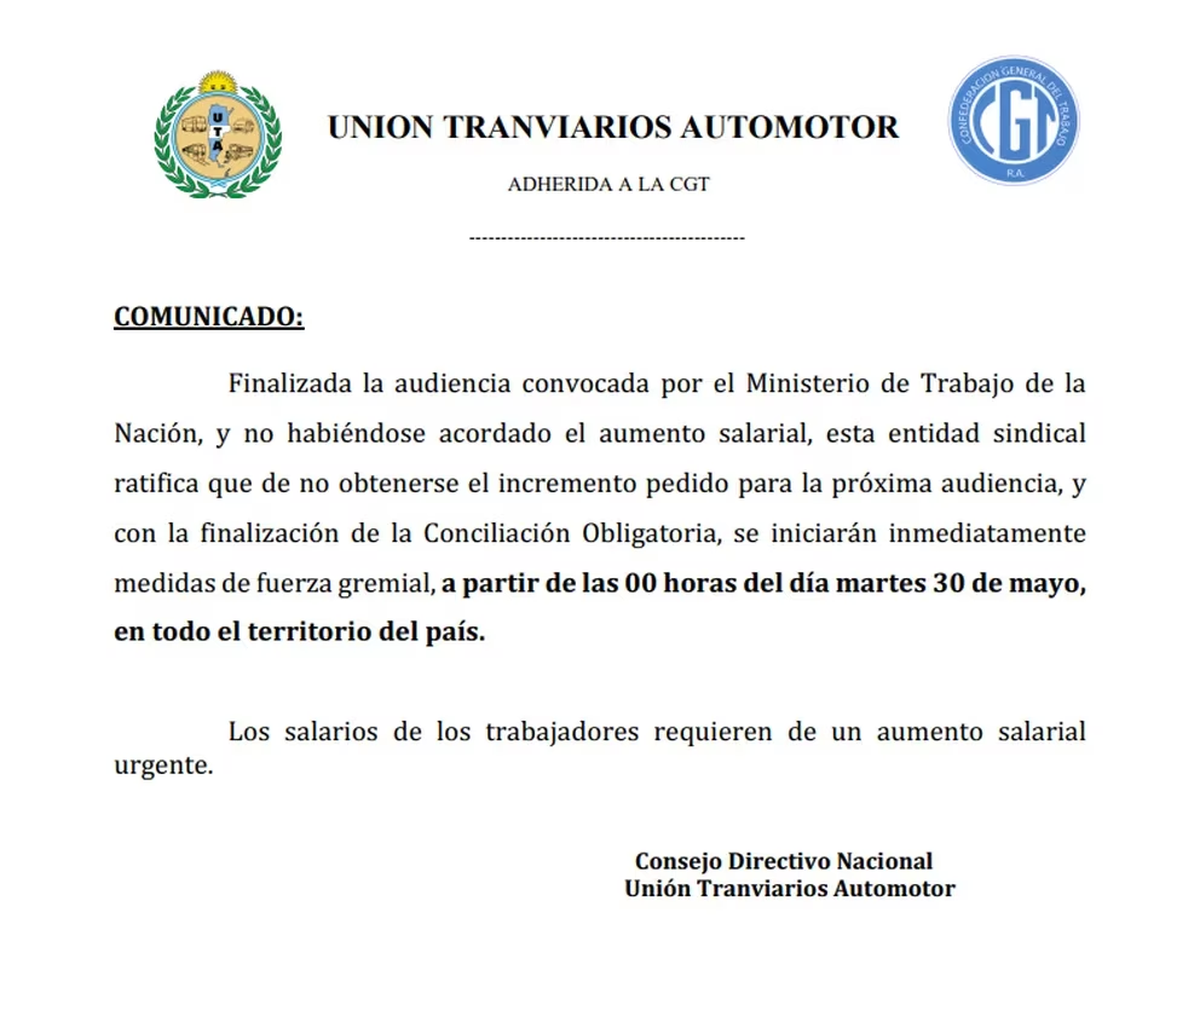 El comunicado de la UTA en el que se declara una huelga de colectivos para el 30 de mayo próximo.